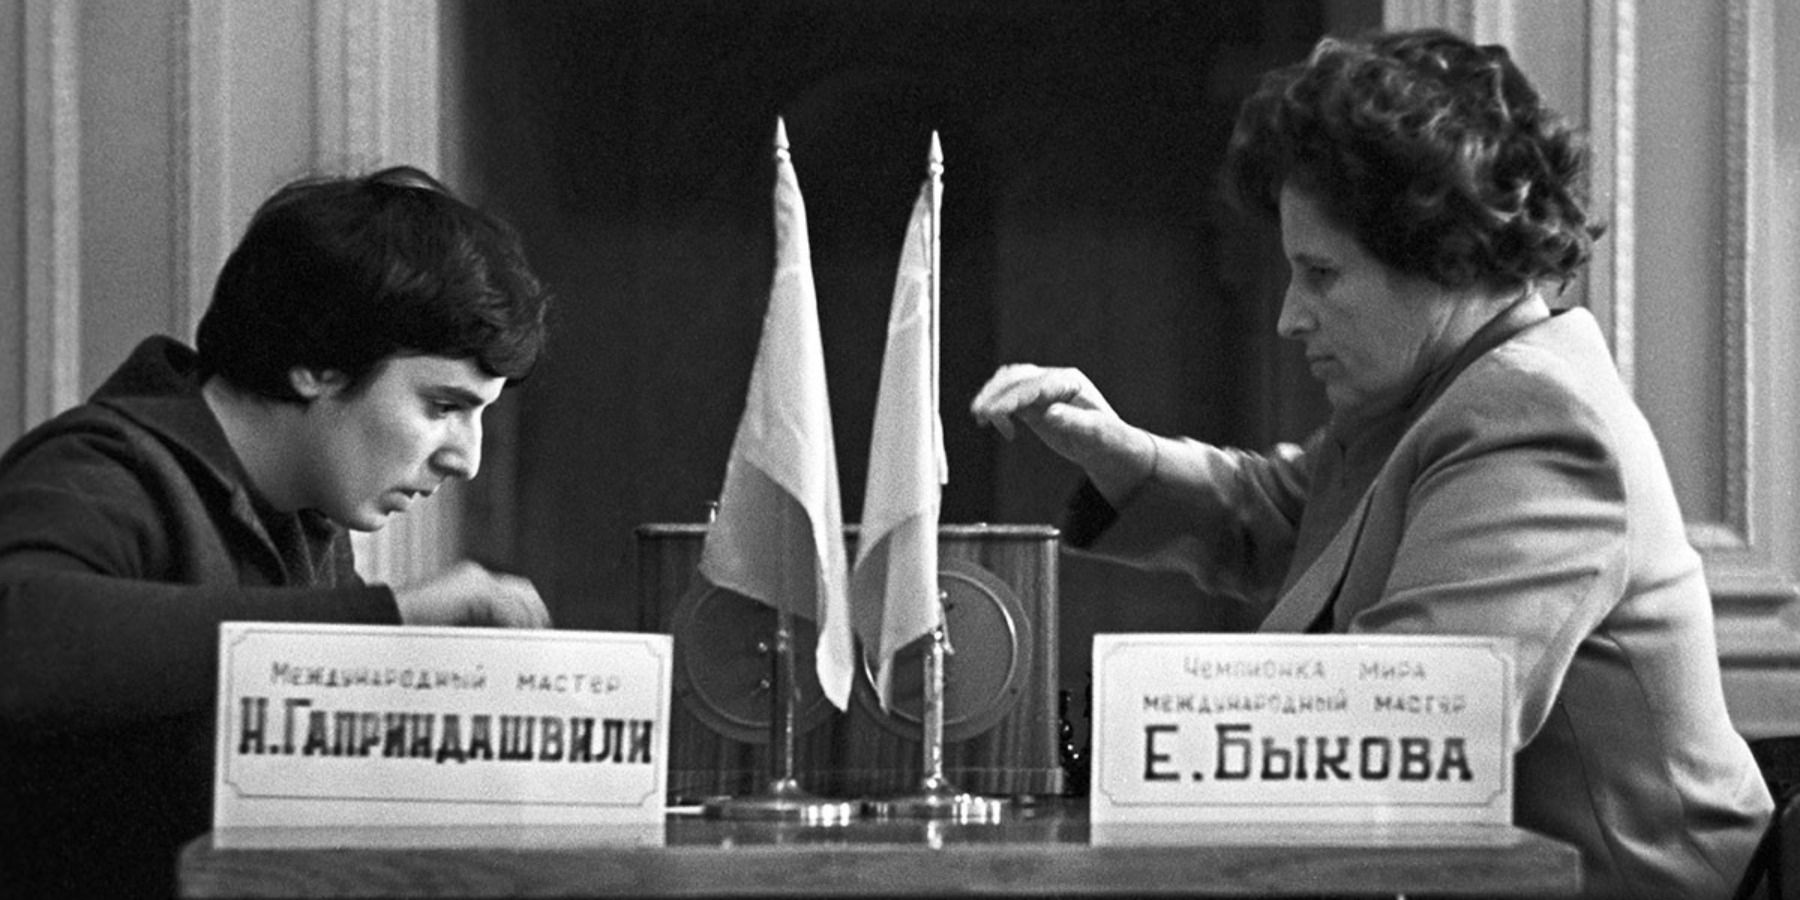 Nona Gaprindashvili playing chess in Soviet Union